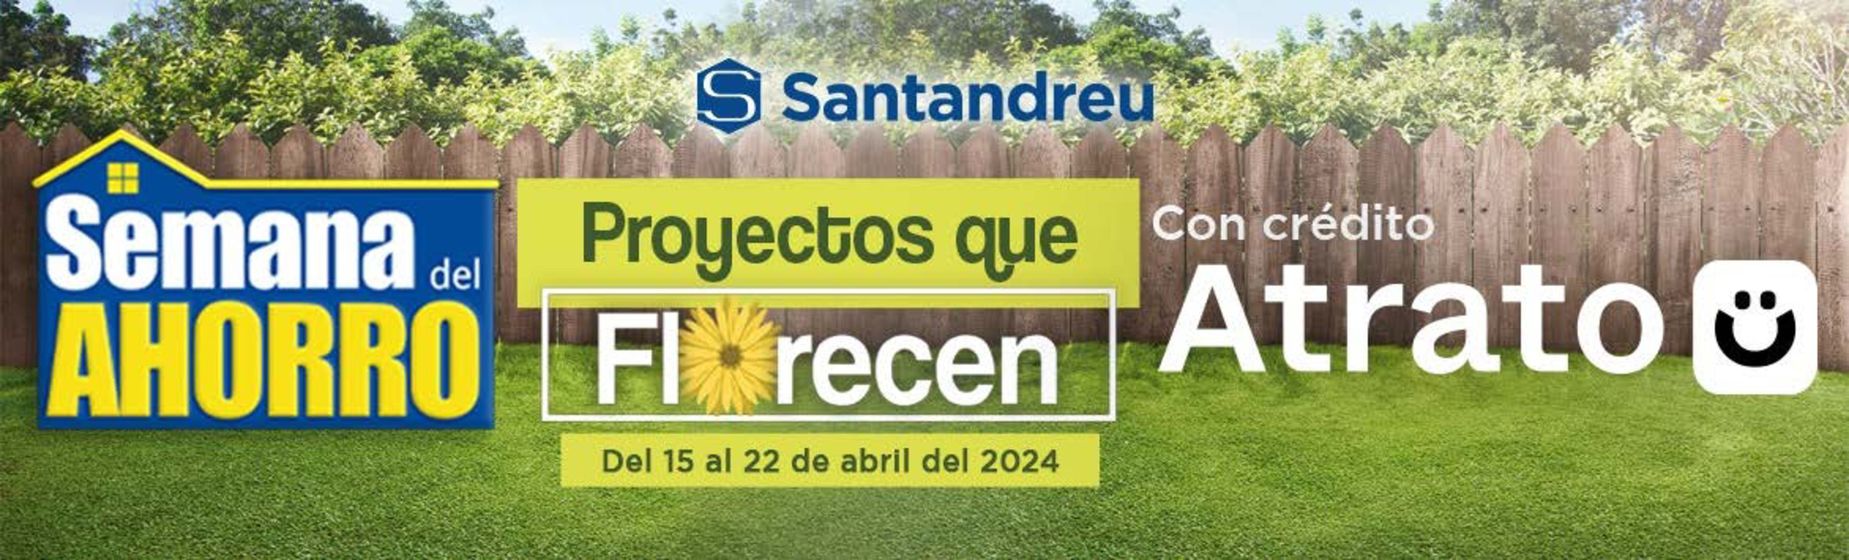 Catálogo Santandreu en Veracruz | Semana del ahorro | 18/4/2024 - 22/4/2024